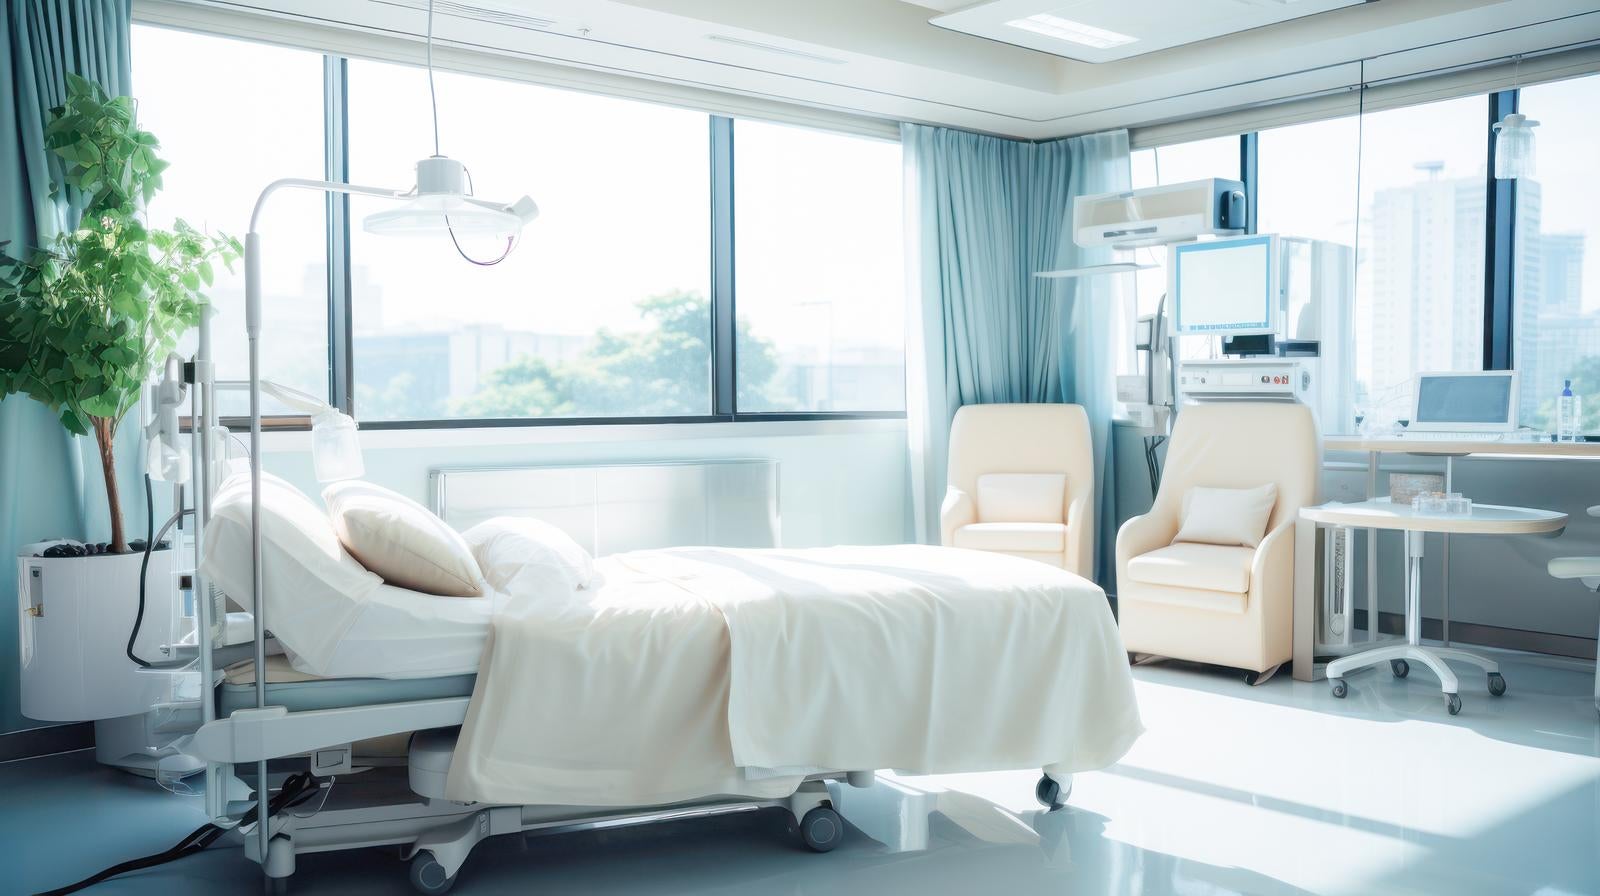 「治療機器と病室のベッド」の写真